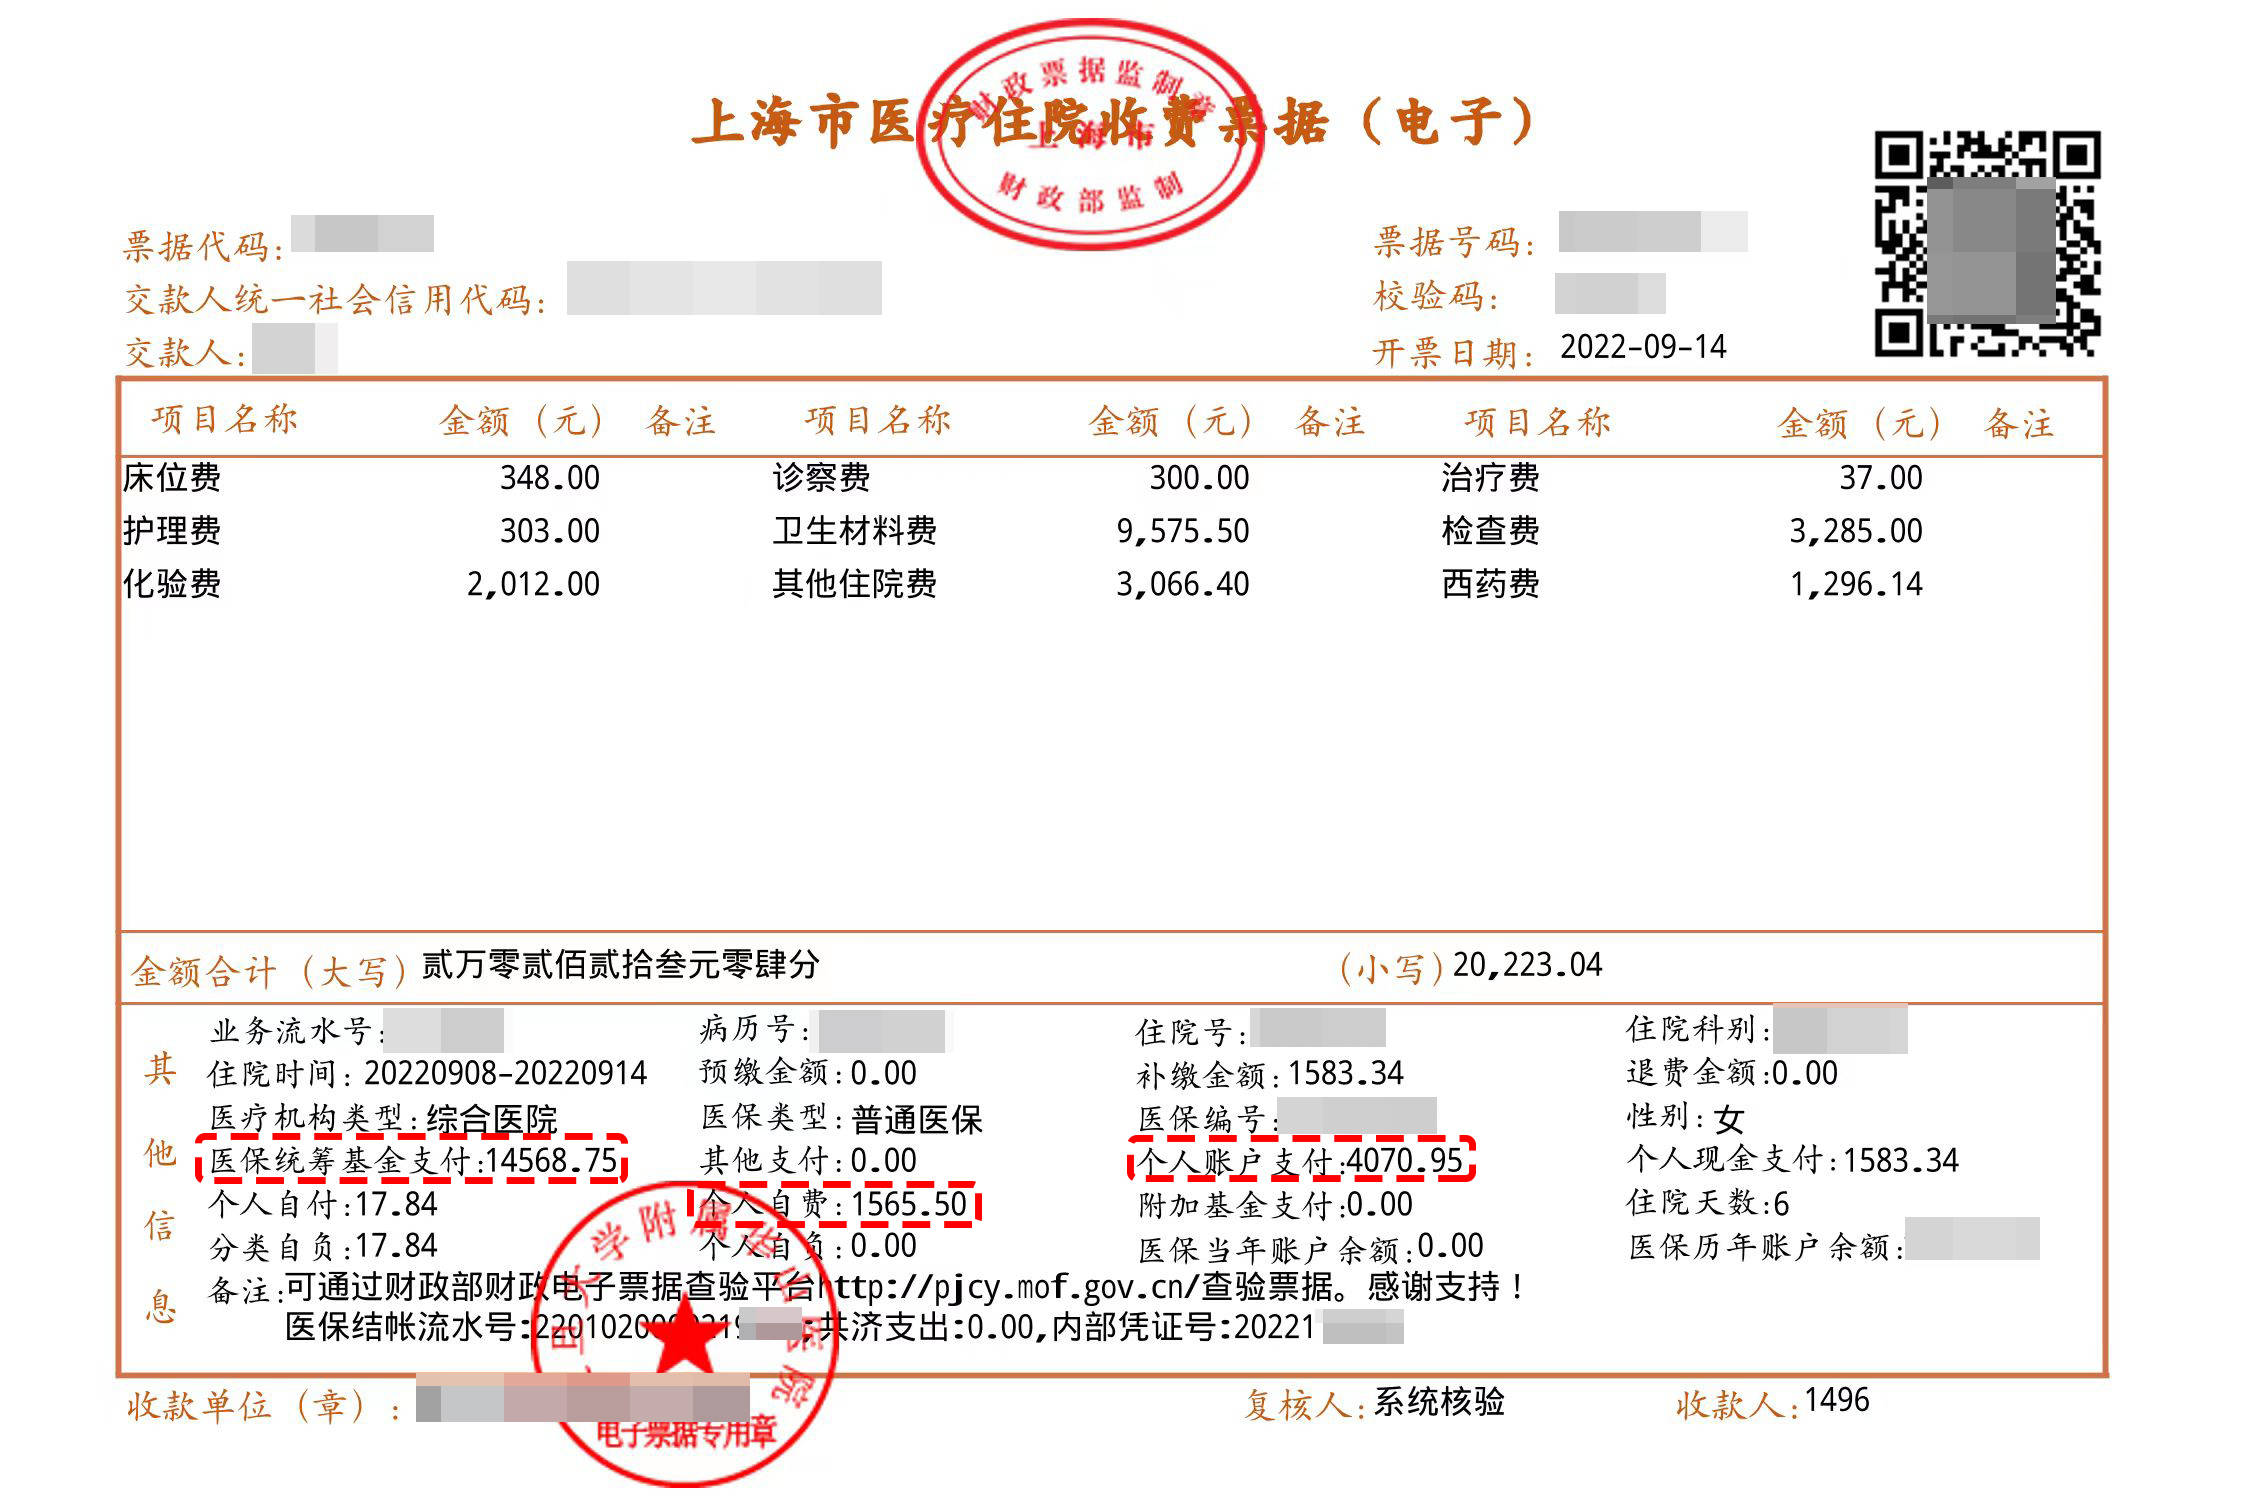 以下是上海某医院的住院收费票据,我们可以清楚的看到下方有:现金支付